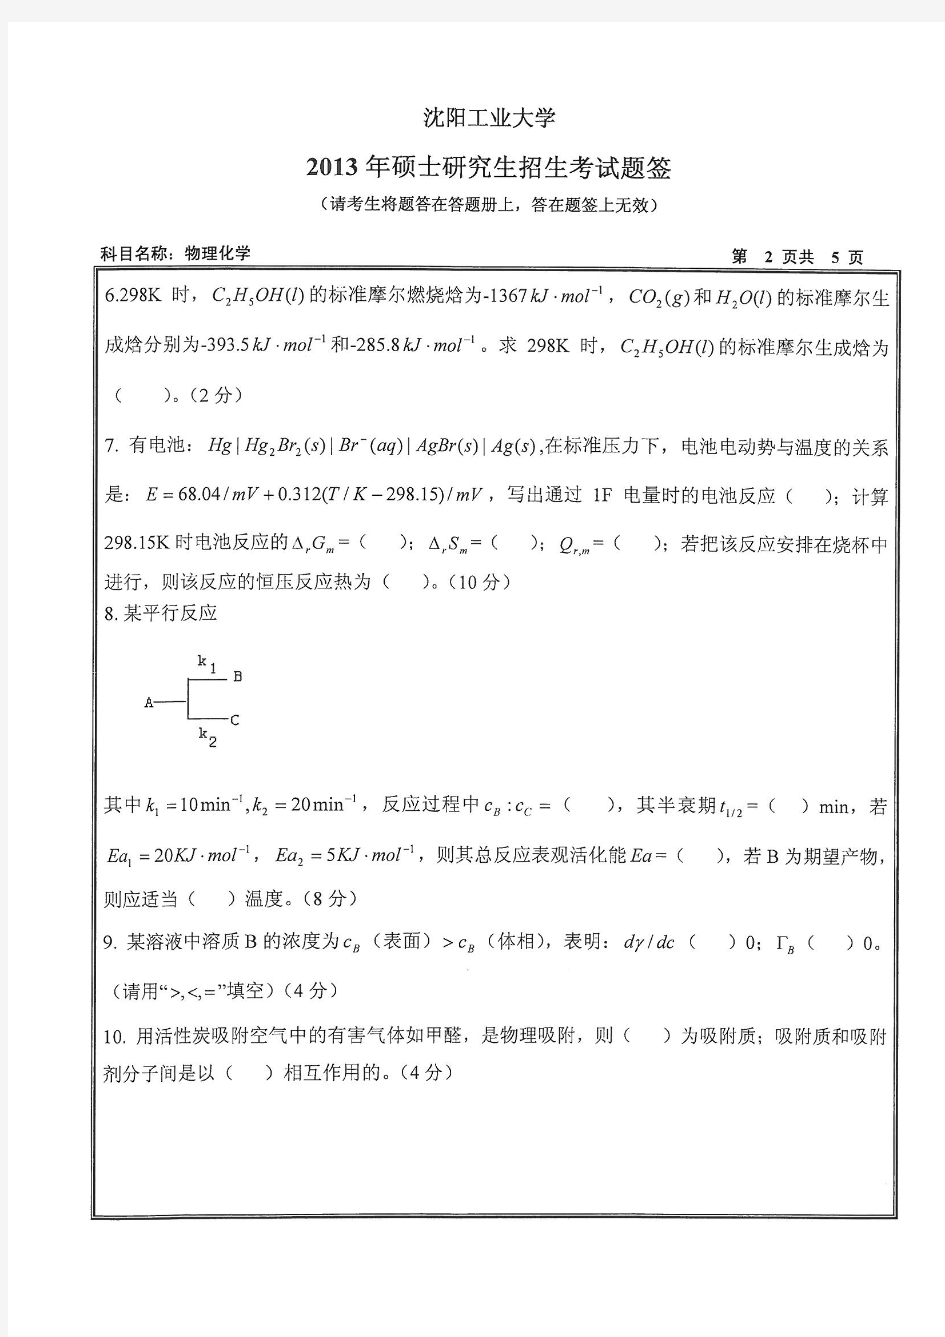 2013年沈阳工业大学考研真题820物理化学